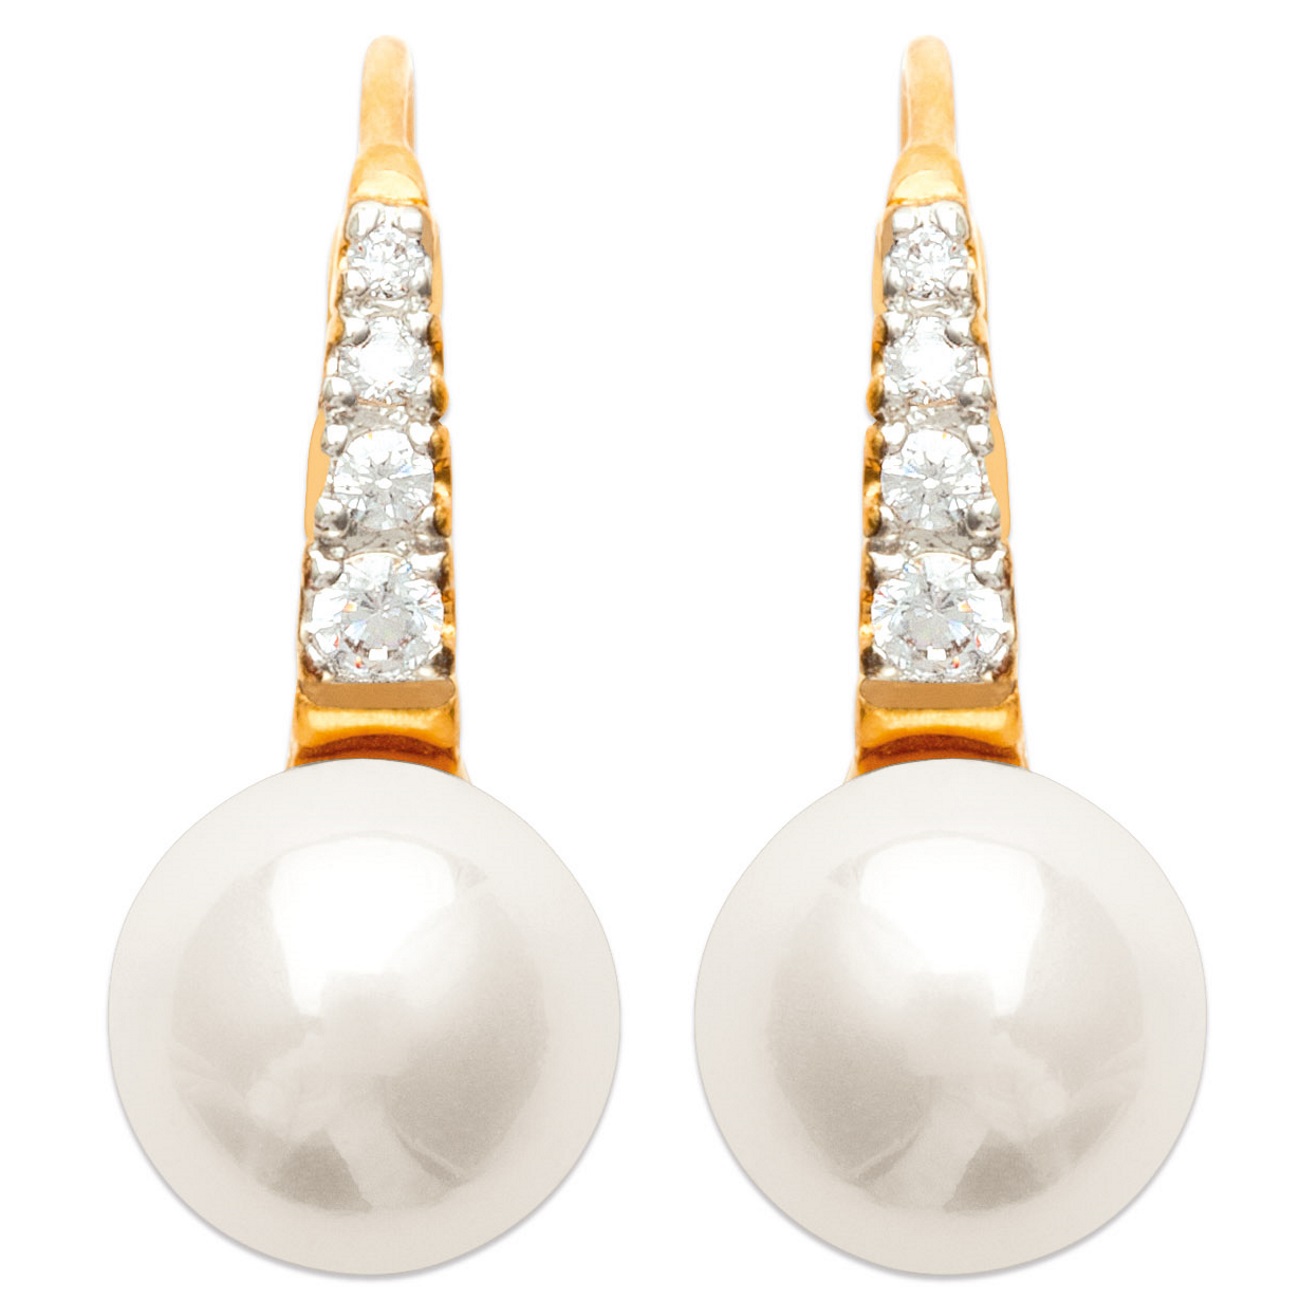 Boucles d'oreilles en plaqué-or, oxyde de zirconium et perle d'imitation. Boule Perle  Adulte Femme Indémodable Mariage 